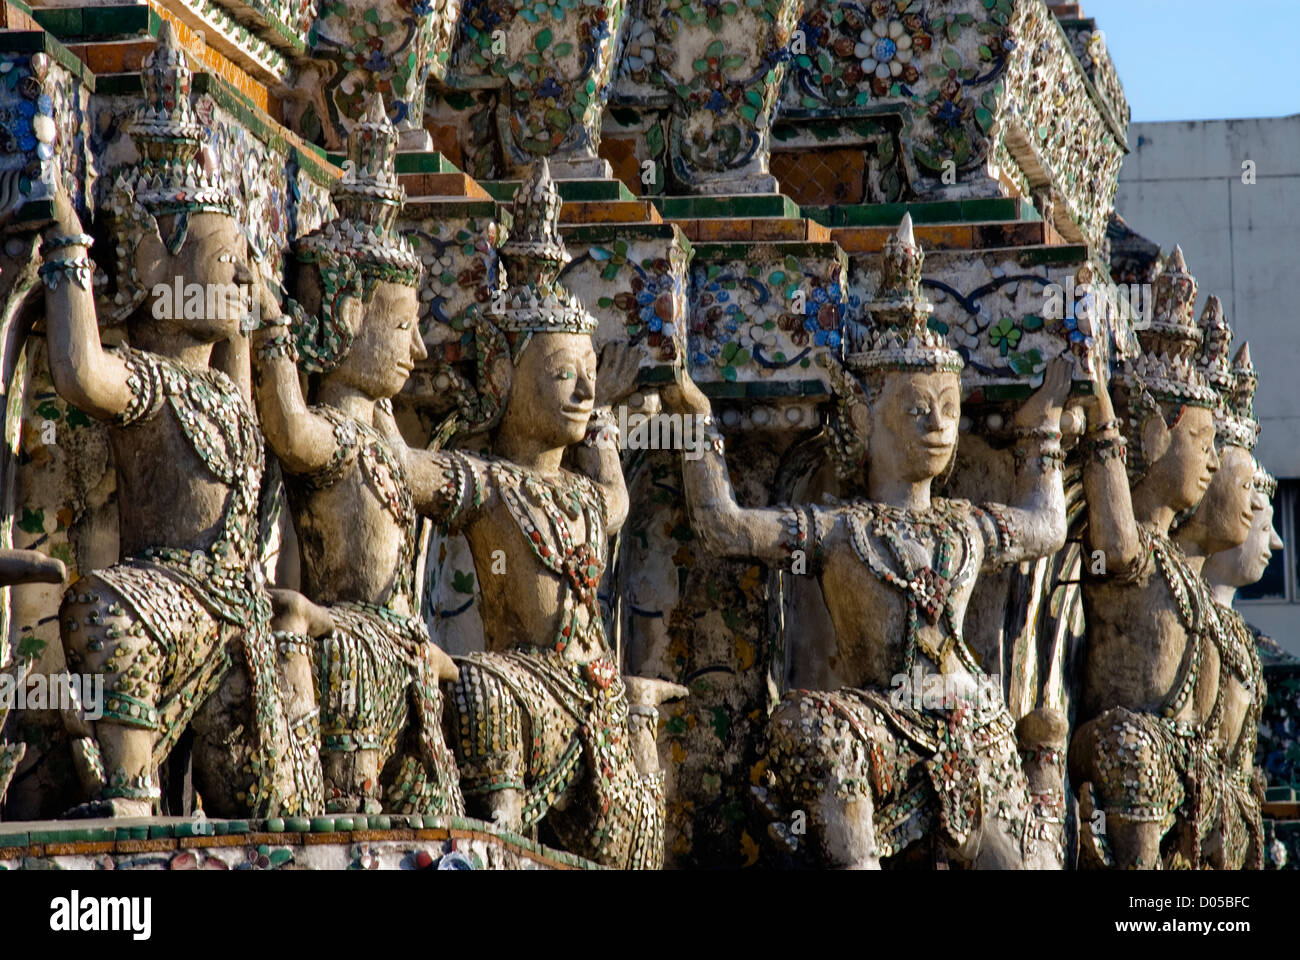 Détail architectural au Prang de Wat Arun, Bangkok, Thaïlande | Architektur Détail suis Wat Arun, Bangkok, Thaïlande Banque D'Images